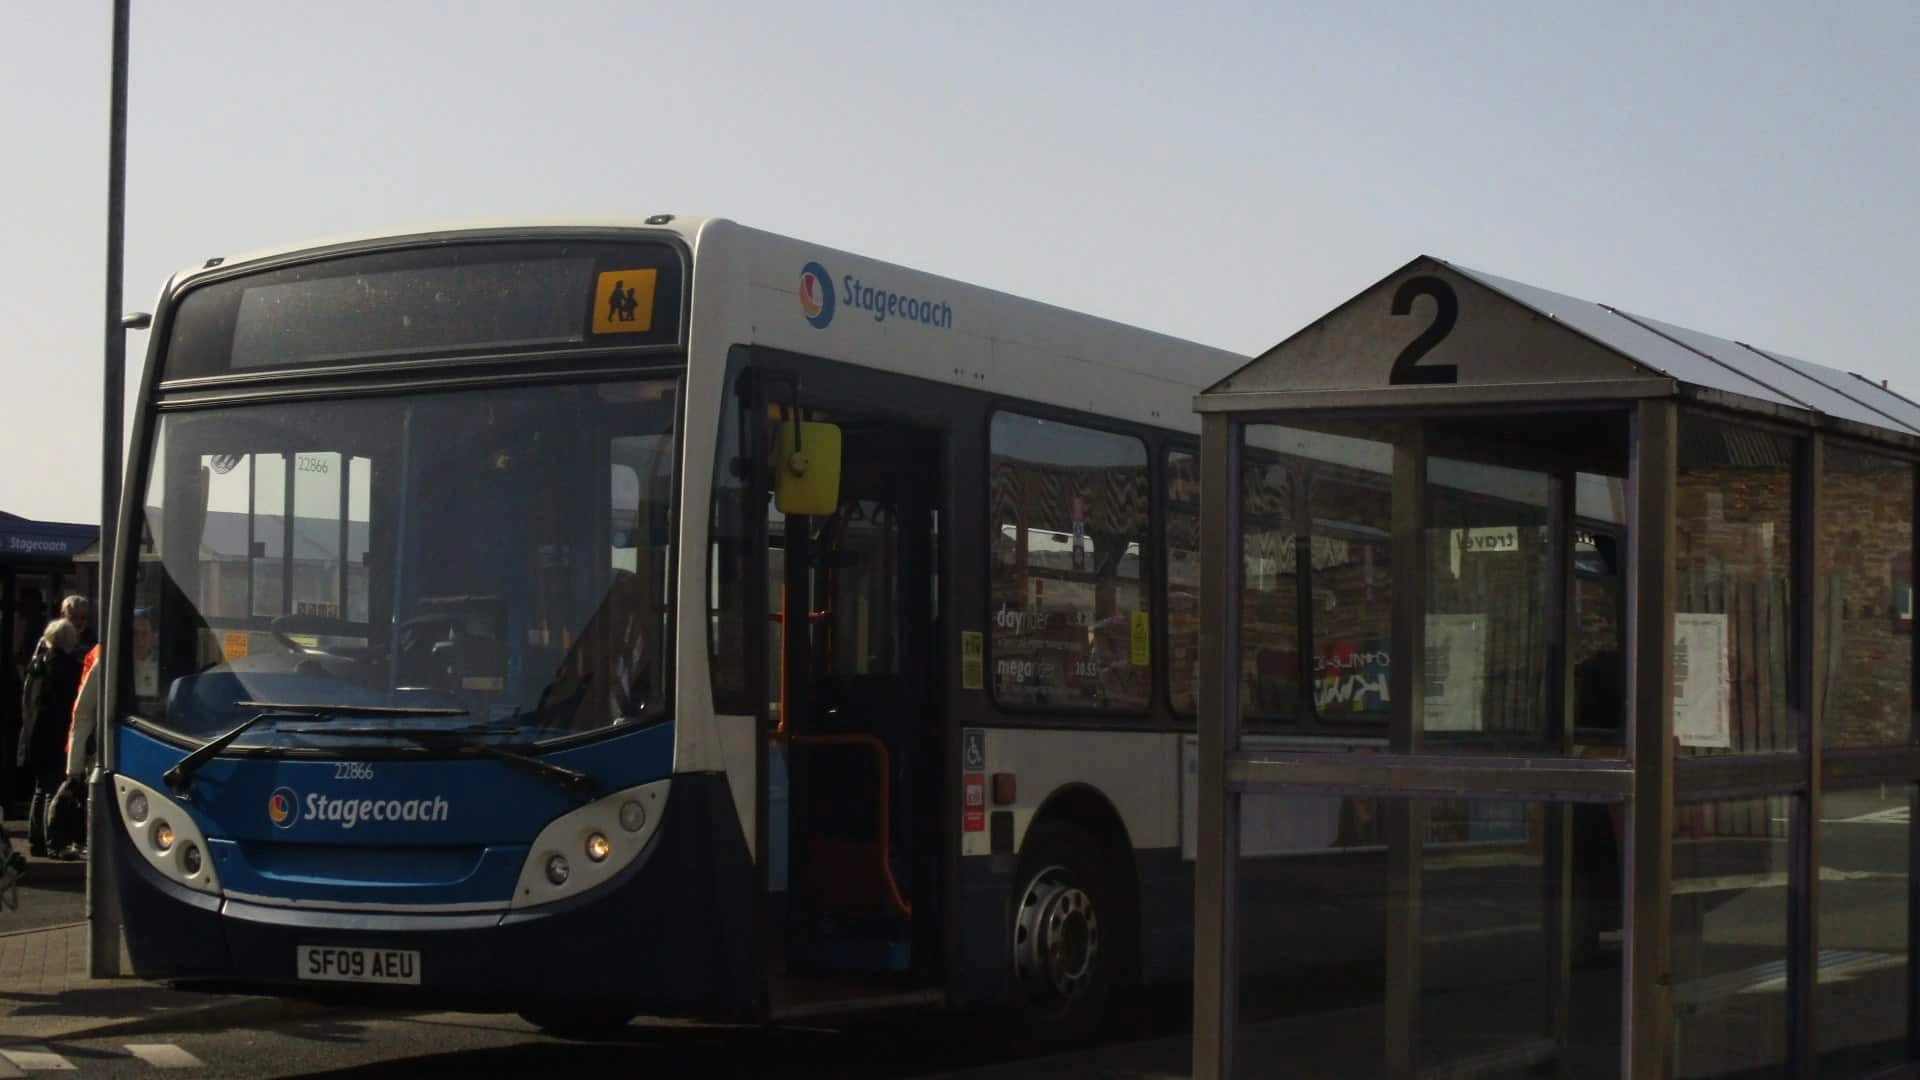 22866 at Kirkwall Travel Centre